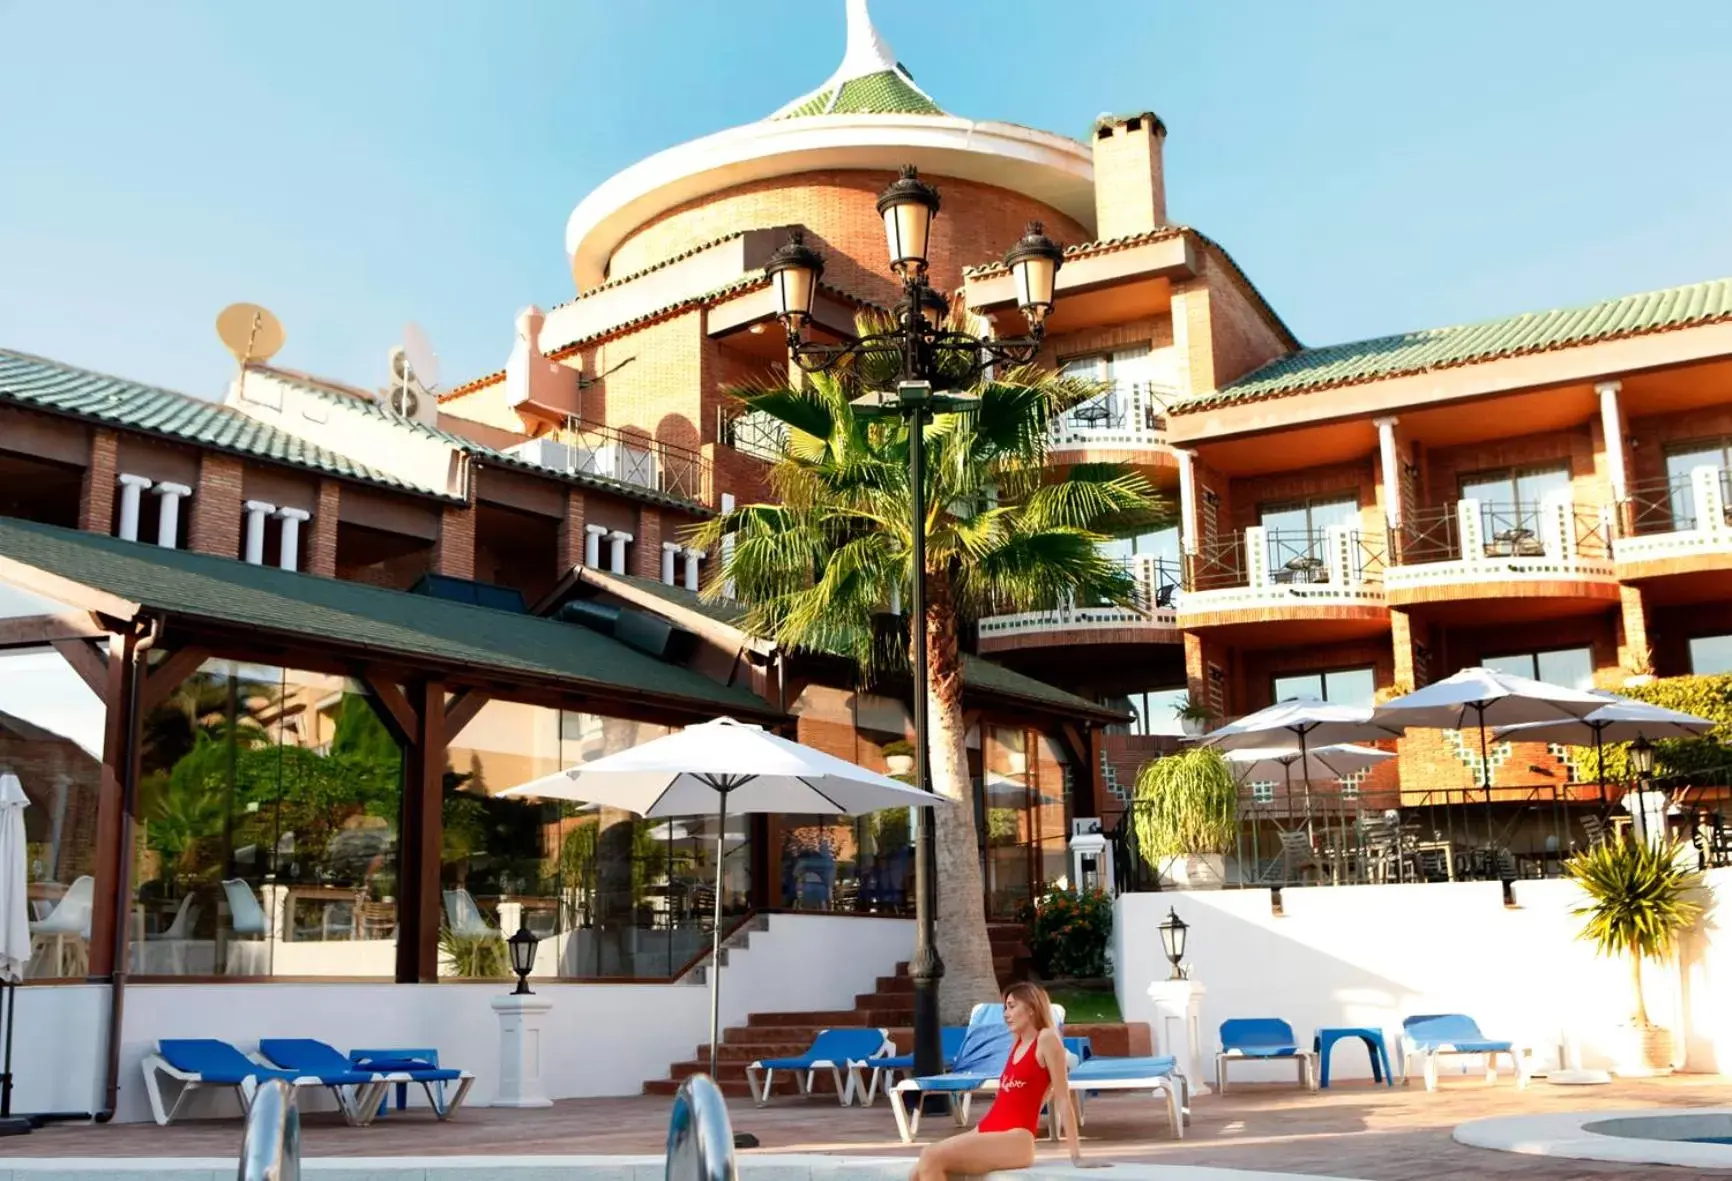 Swimming pool, Property Building in Hotel Boutique Calas de Alicante